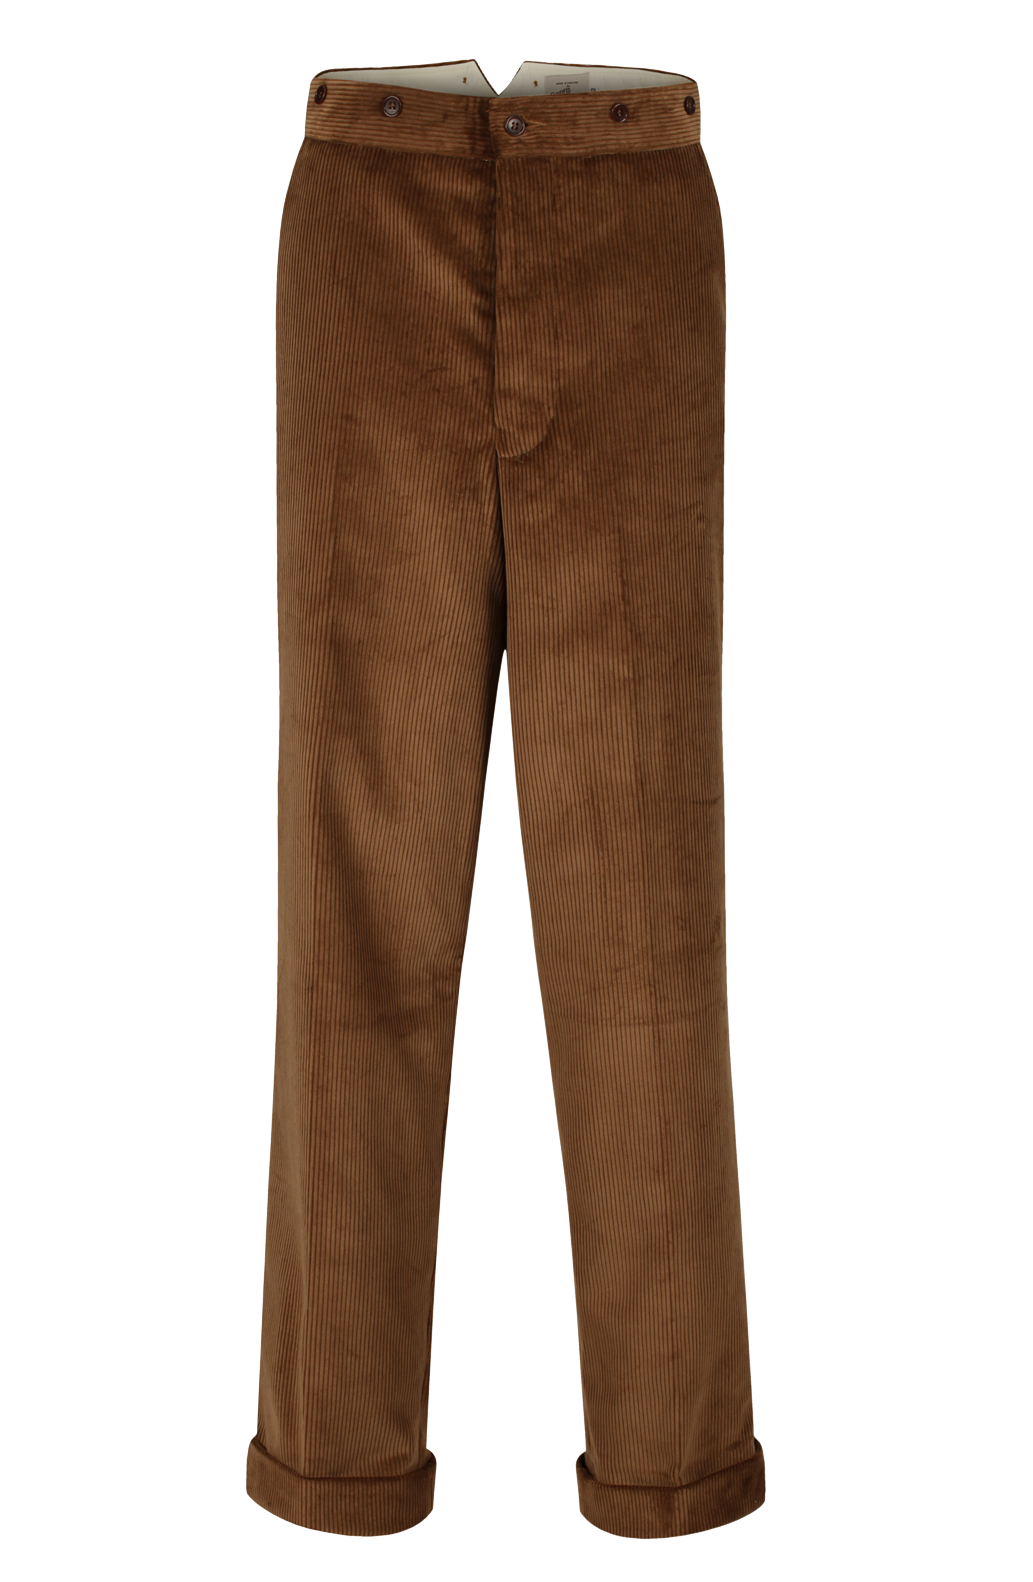 Vintage 1930s trouser